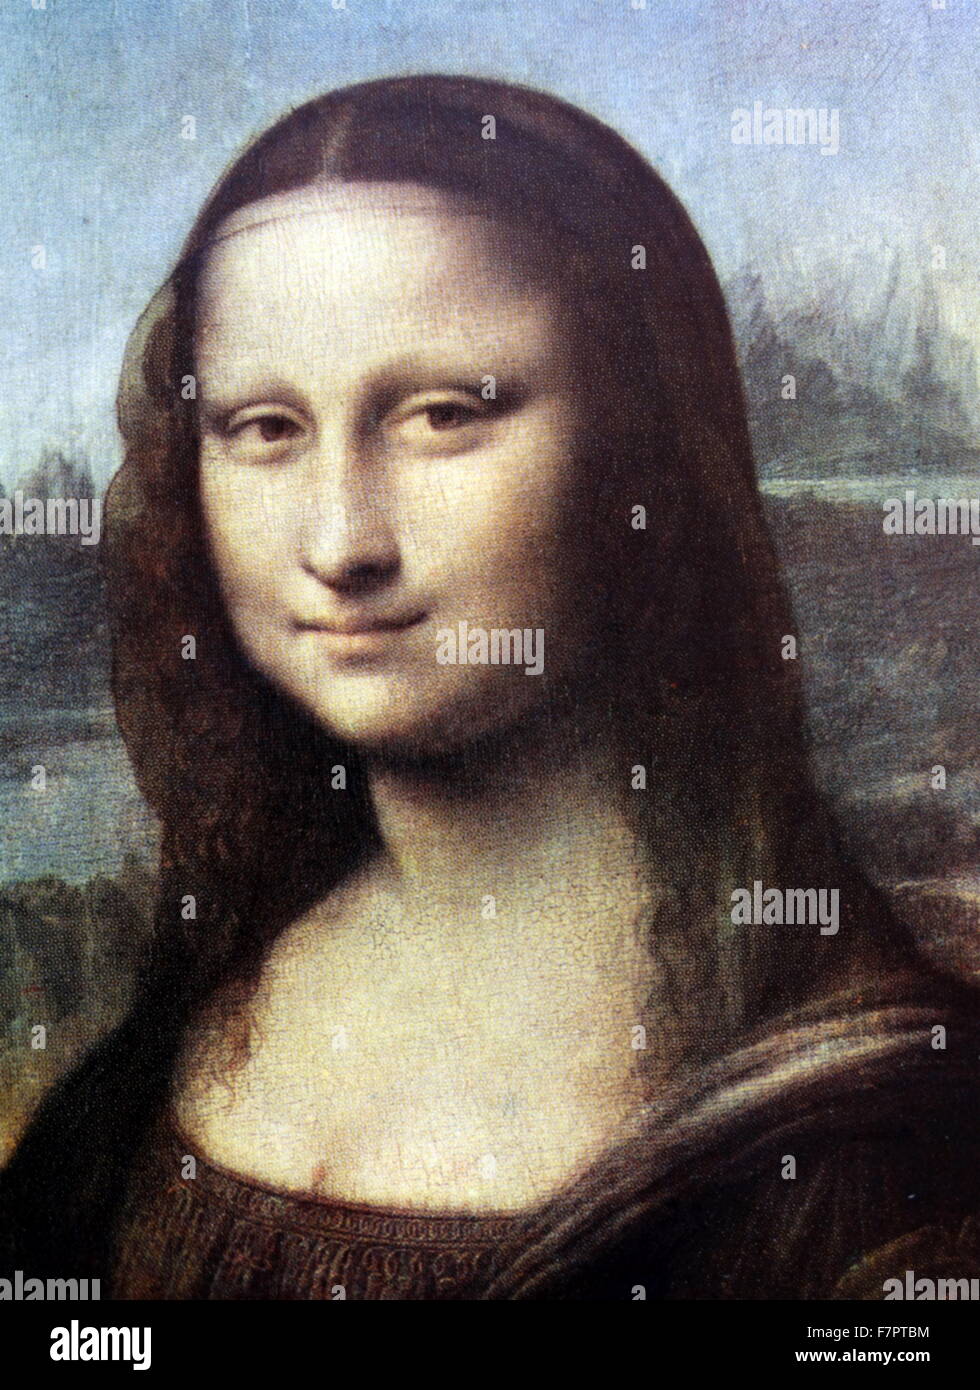 Detail aus der Mona Lisa oder La Gioconda oder La Joconde, vom italienischen Maler Leonardo da Vinci, 1452-1519. Das Gemälde, gedacht, um ein Portrait von Lisa Gherardini, Frau von Francesco del Giocondo, ist in Öl auf einem weißen Lombardei Pappel-Panel und wird geglaubt, um zwischen 1503 und 1506 gemalt worden sein. Stockfoto